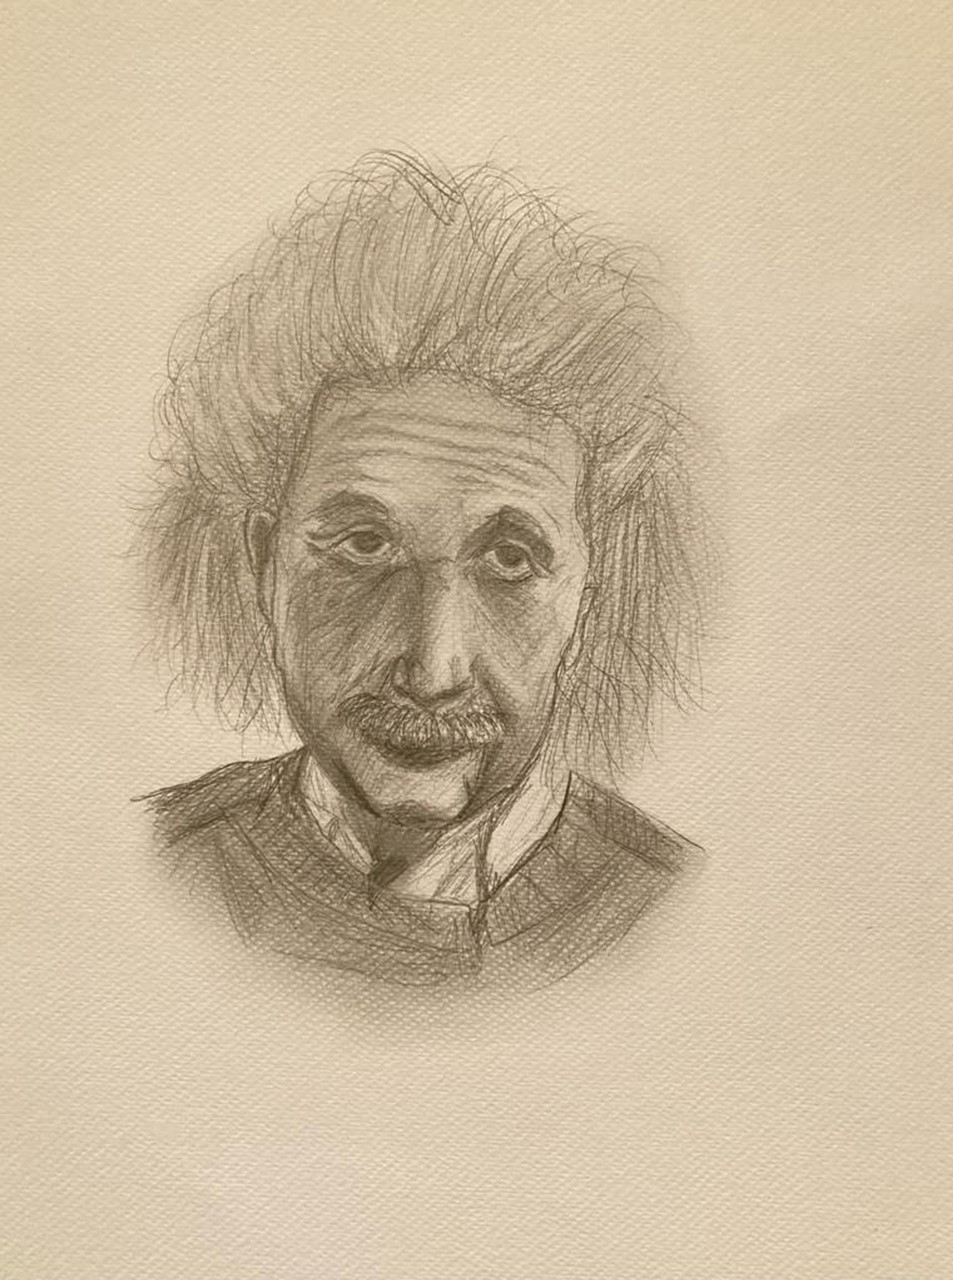 Picture of Albert Einstein